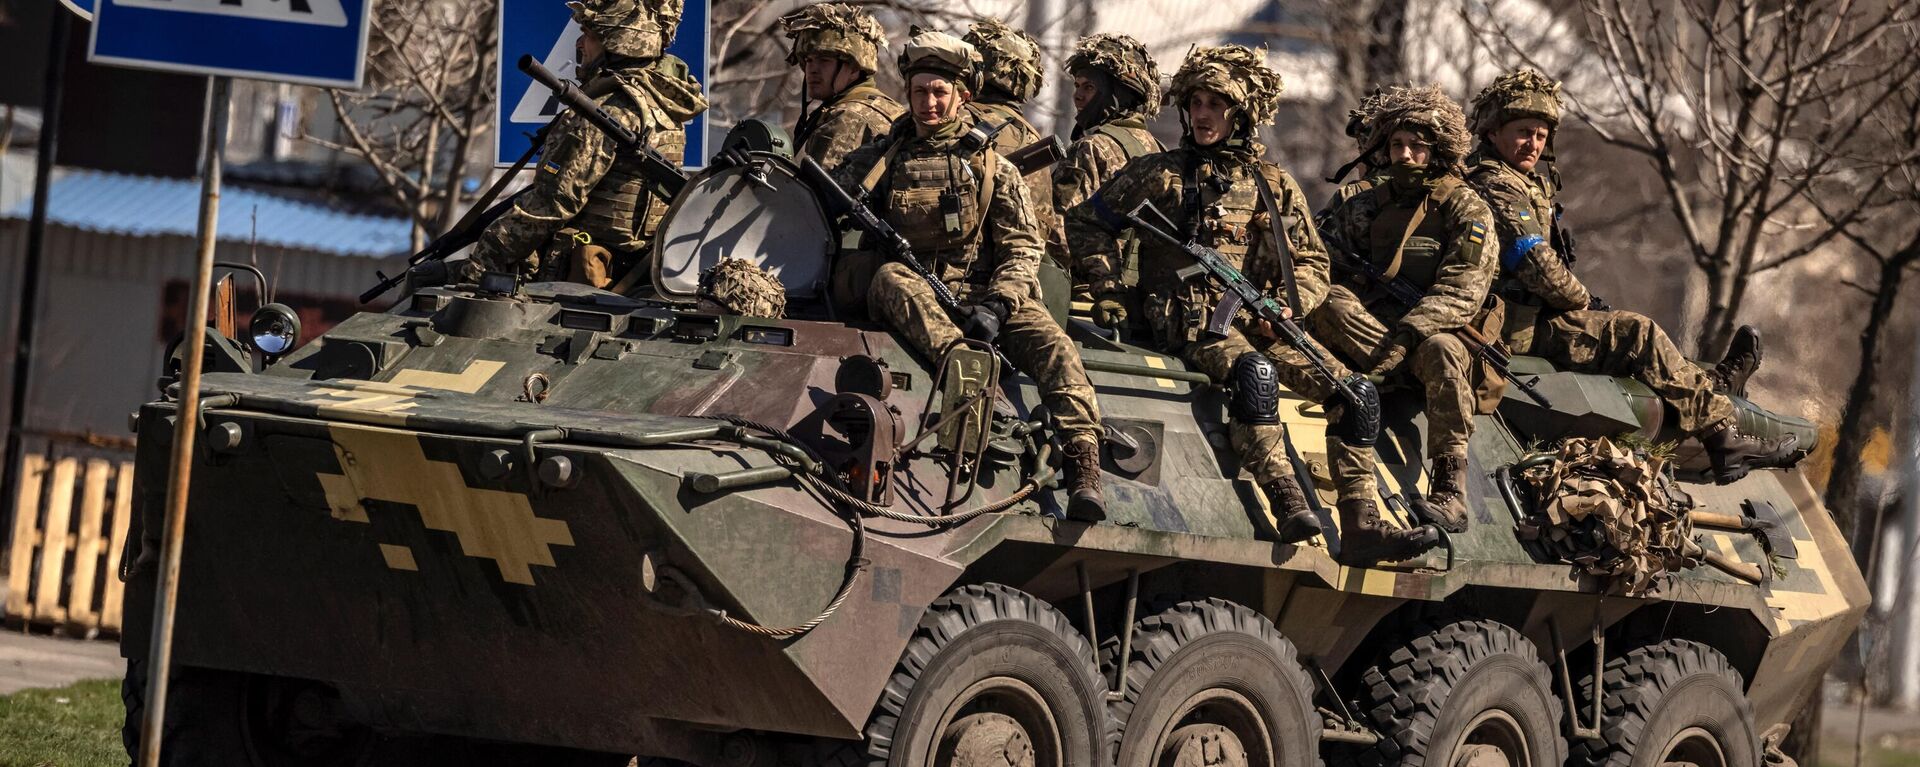 Украинские солдаты сидят в бронетранспортере в городе Северодонецк, Донбасс - Sputnik Абхазия, 1920, 14.11.2022